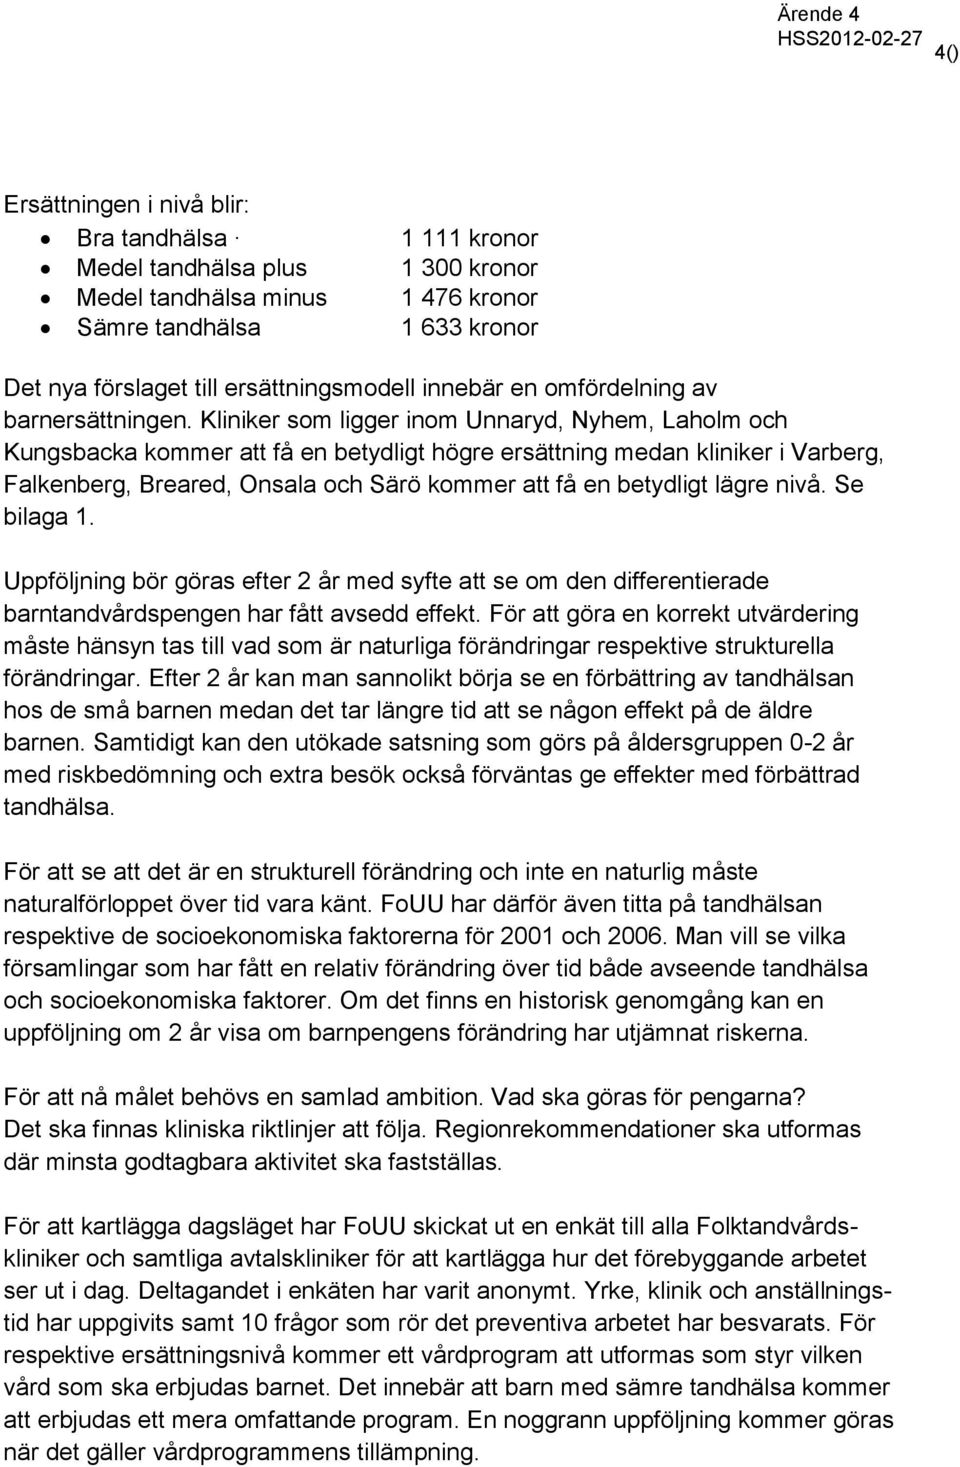 Kliniker som ligger inom Unnaryd, Nyhem, Laholm och Kungsbacka kommer att få en betydligt högre ersättning medan kliniker i Varberg, Falkenberg, Breared, Onsala och Särö kommer att få en betydligt